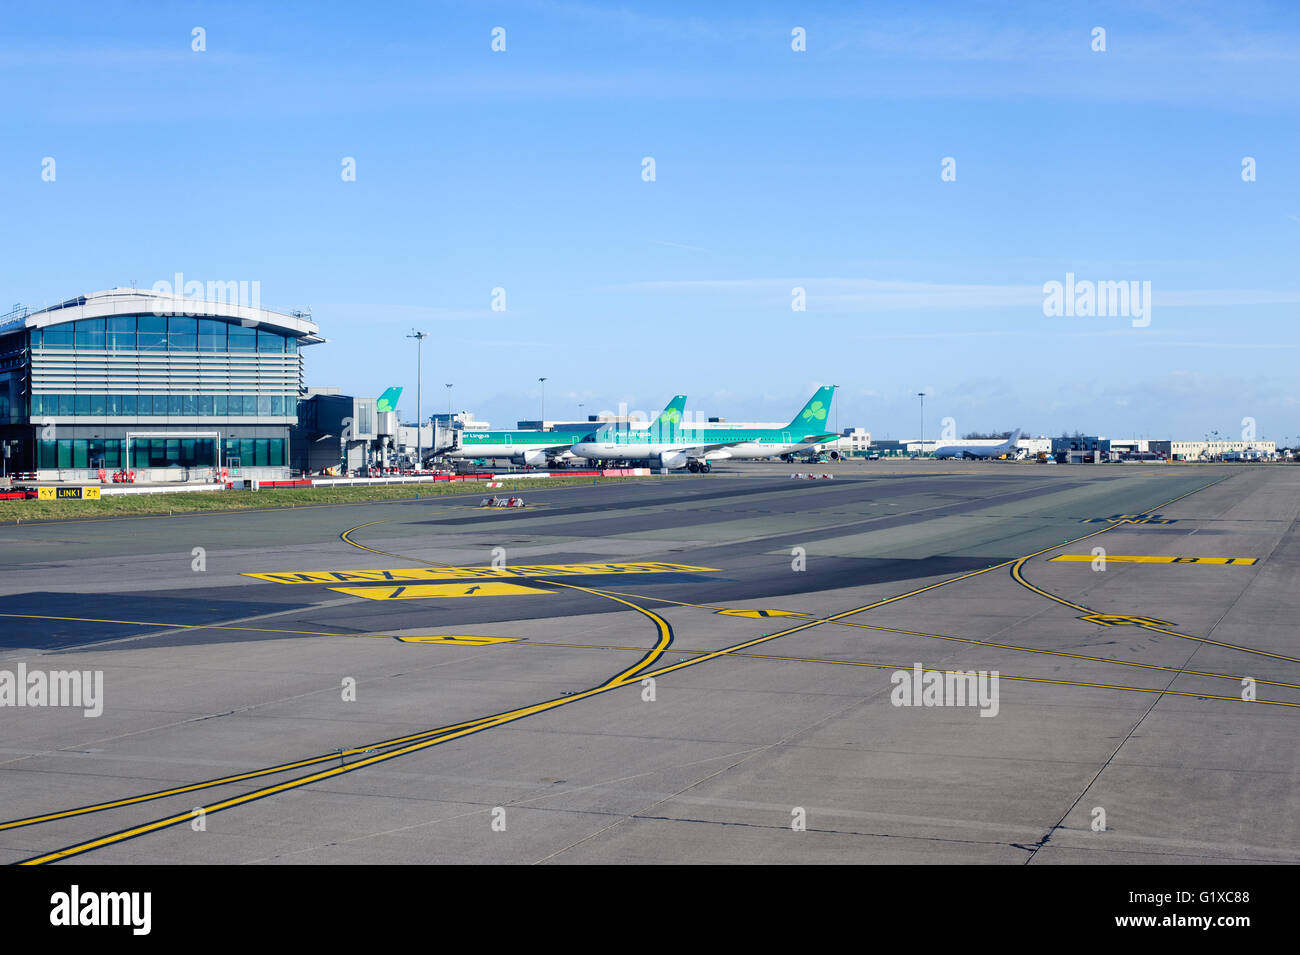 Dublin, Irlande - 01 Février, 2015 : Aer Lingus avions alignés au Terminal 2 de l''aéroport de Dublin, Irlande Banque D'Images